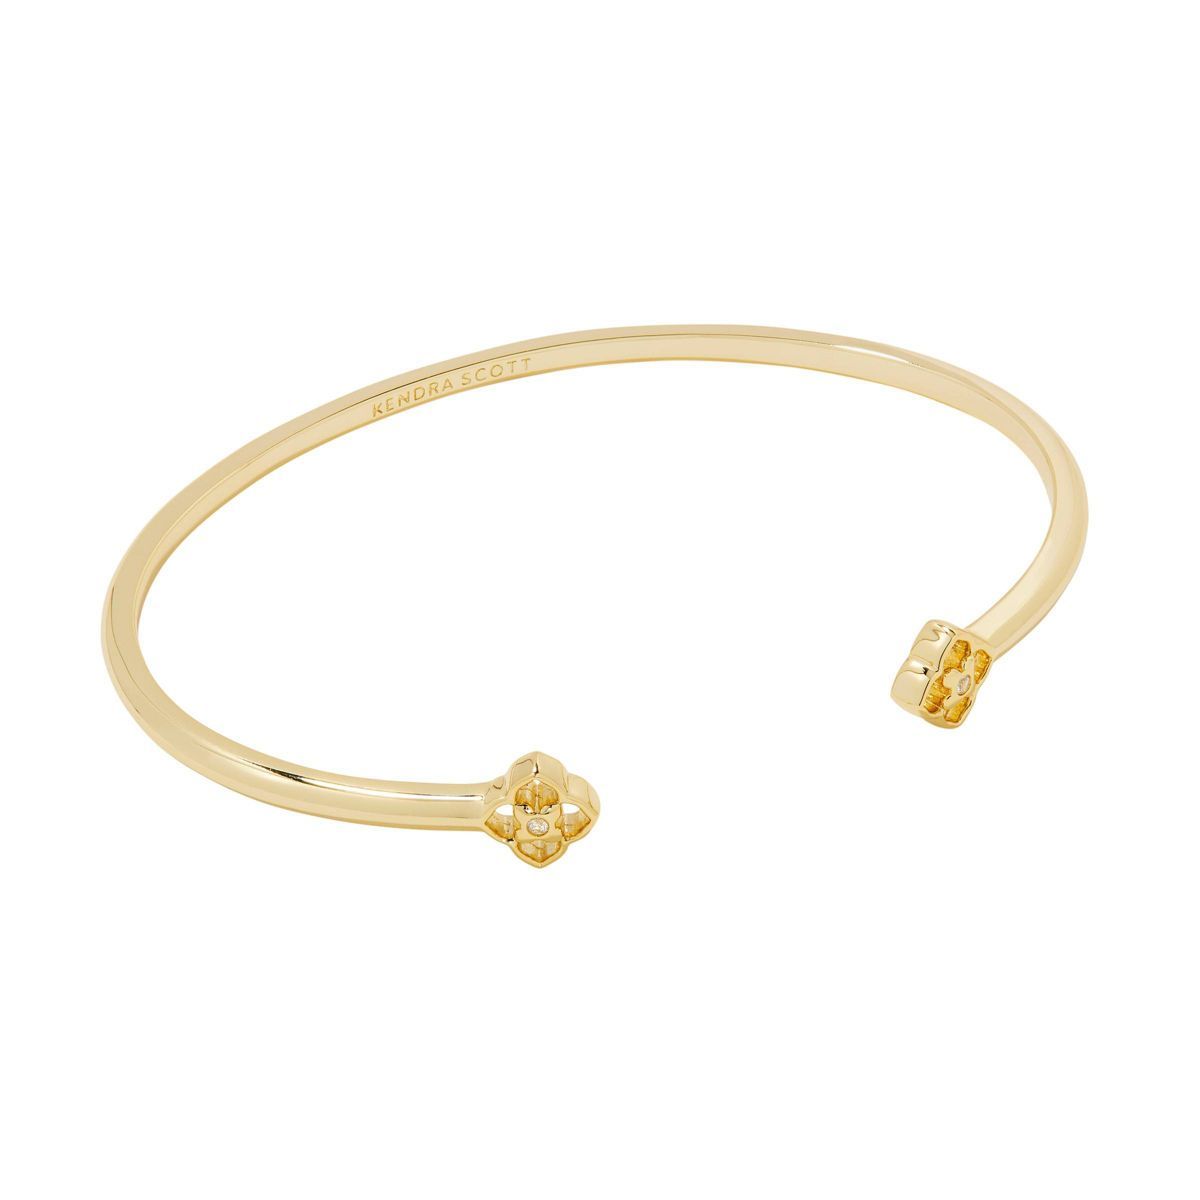 Kendra Scott Iris 14K Gold Over Brass Cuff Bracelet - Gold | Target